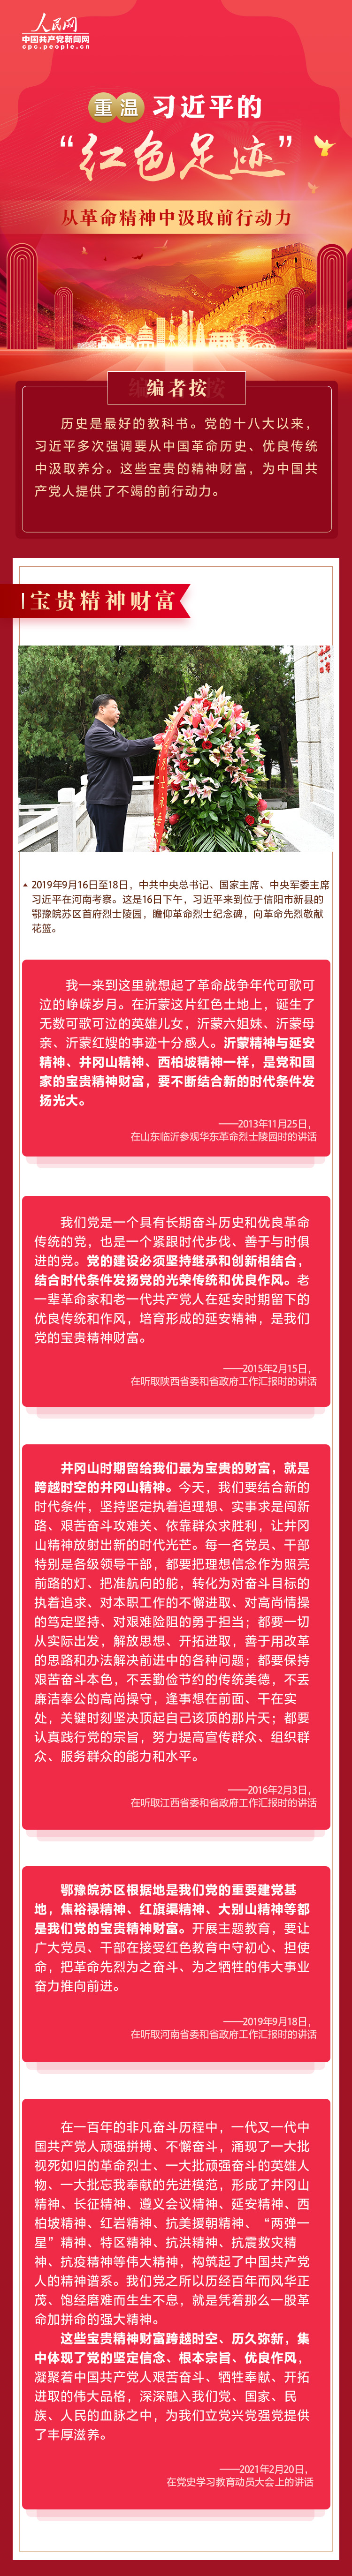 红色足迹篇系列图解之二 人民网-中国共产党新闻网.jpg